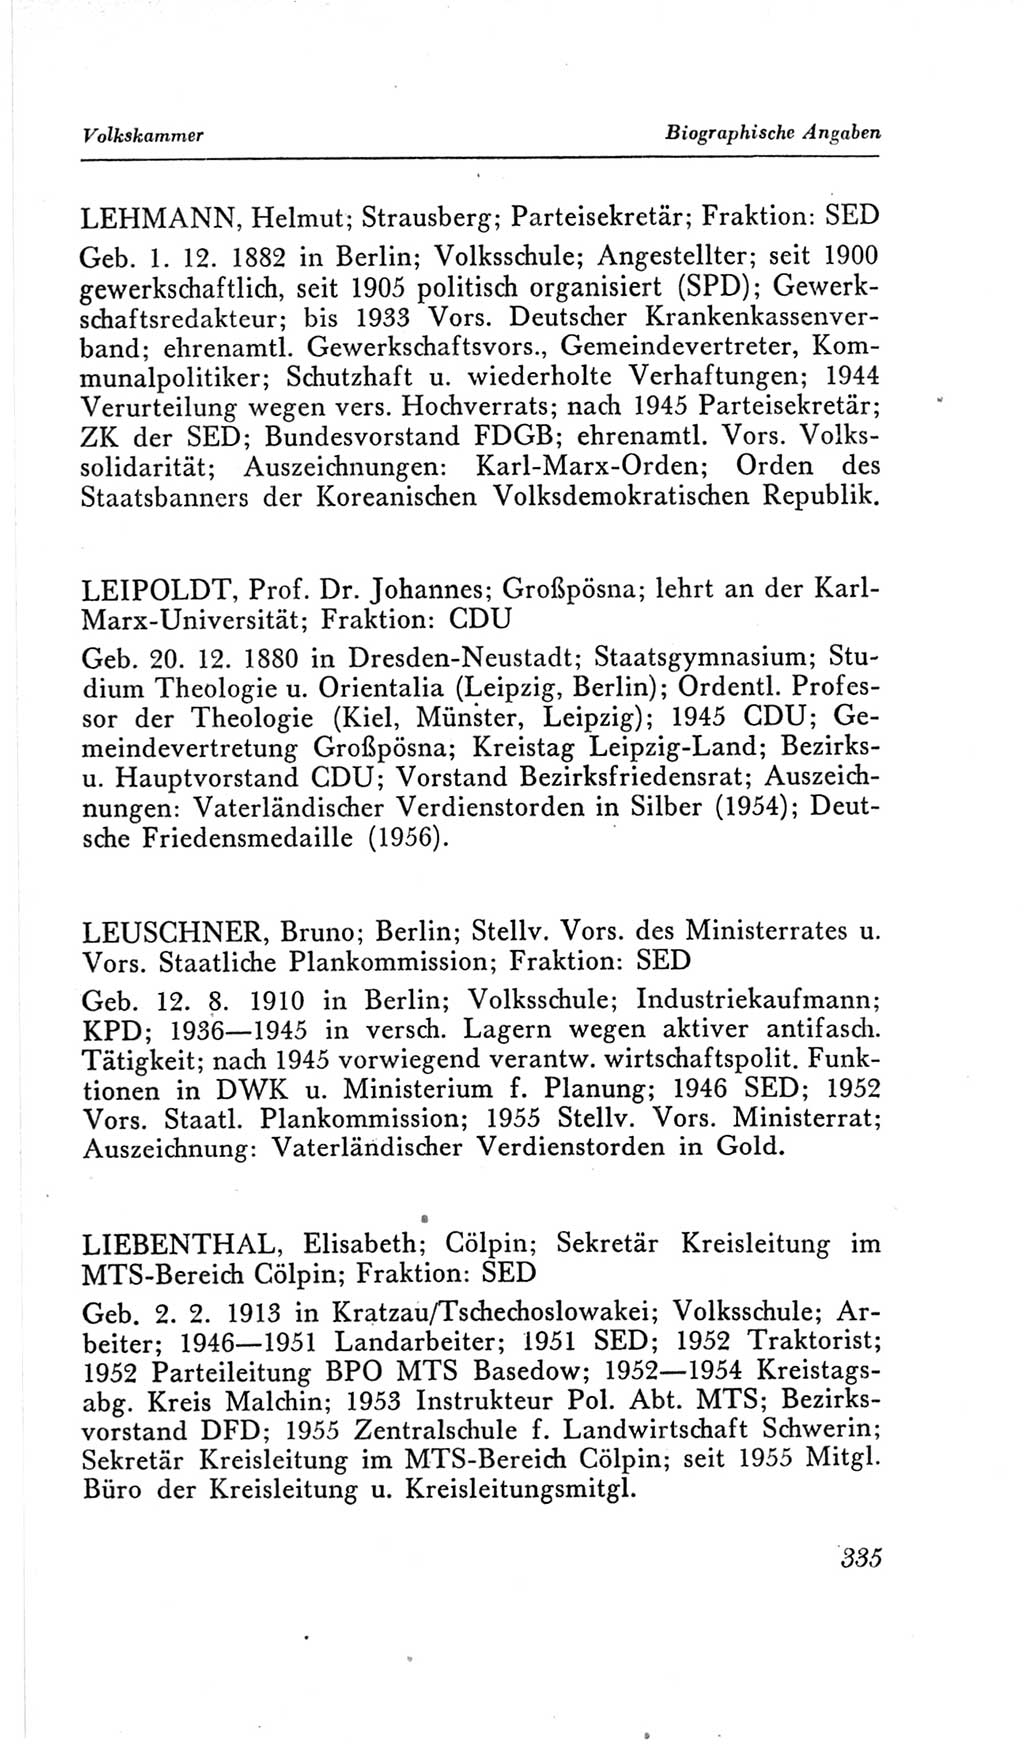 Handbuch der Volkskammer (VK) der Deutschen Demokratischen Republik (DDR), 2. Wahlperiode 1954-1958, Seite 335 (Hdb. VK. DDR, 2. WP. 1954-1958, S. 335)